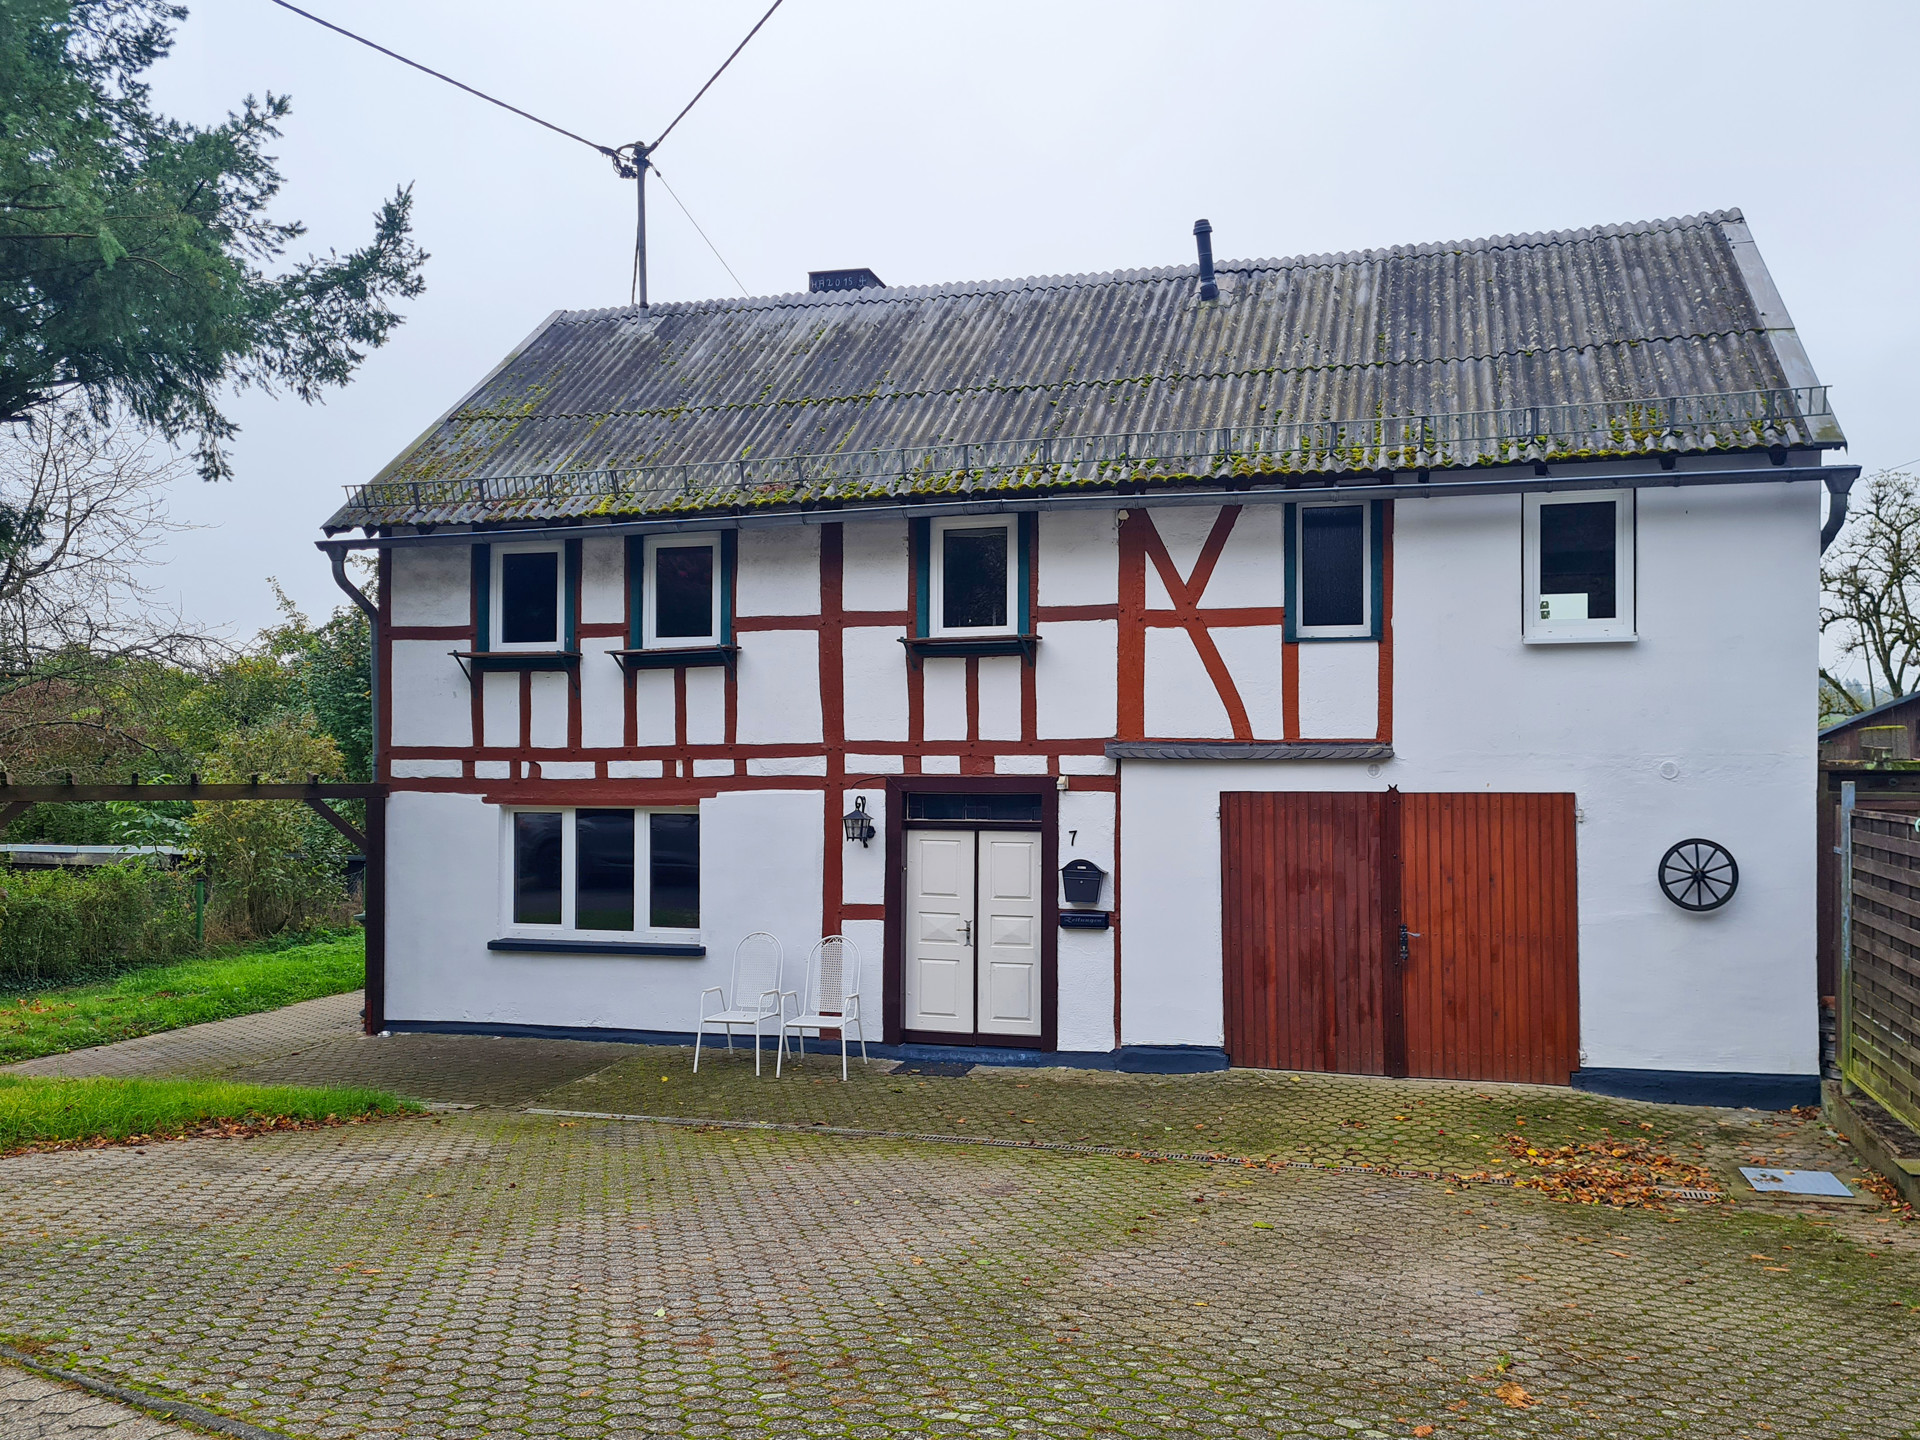 Gemütliches Fachwerkhaus in ruhiger Wohnlage, nähe Puderbach zu verkaufen!